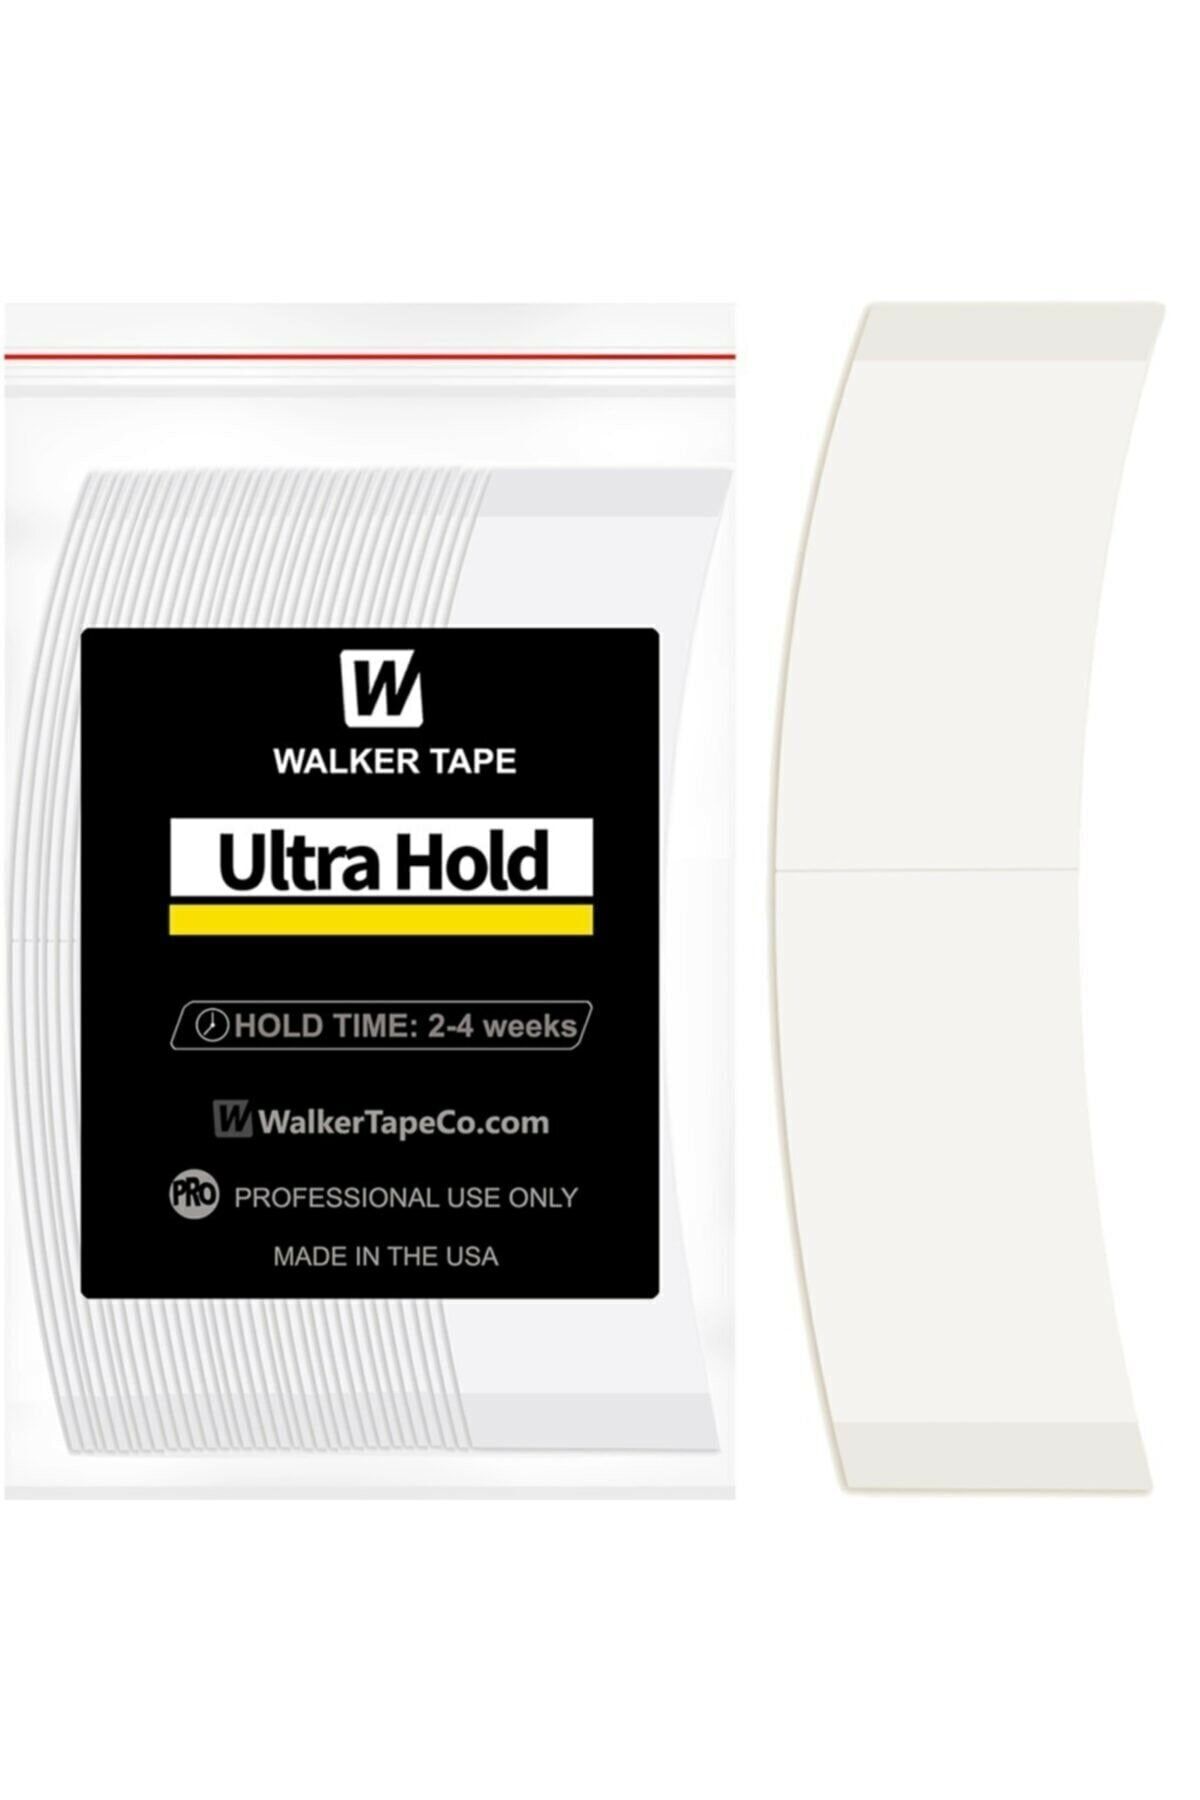 Walker Tape Ultra Hold Protez Saç Bandı 36 'lık Paket